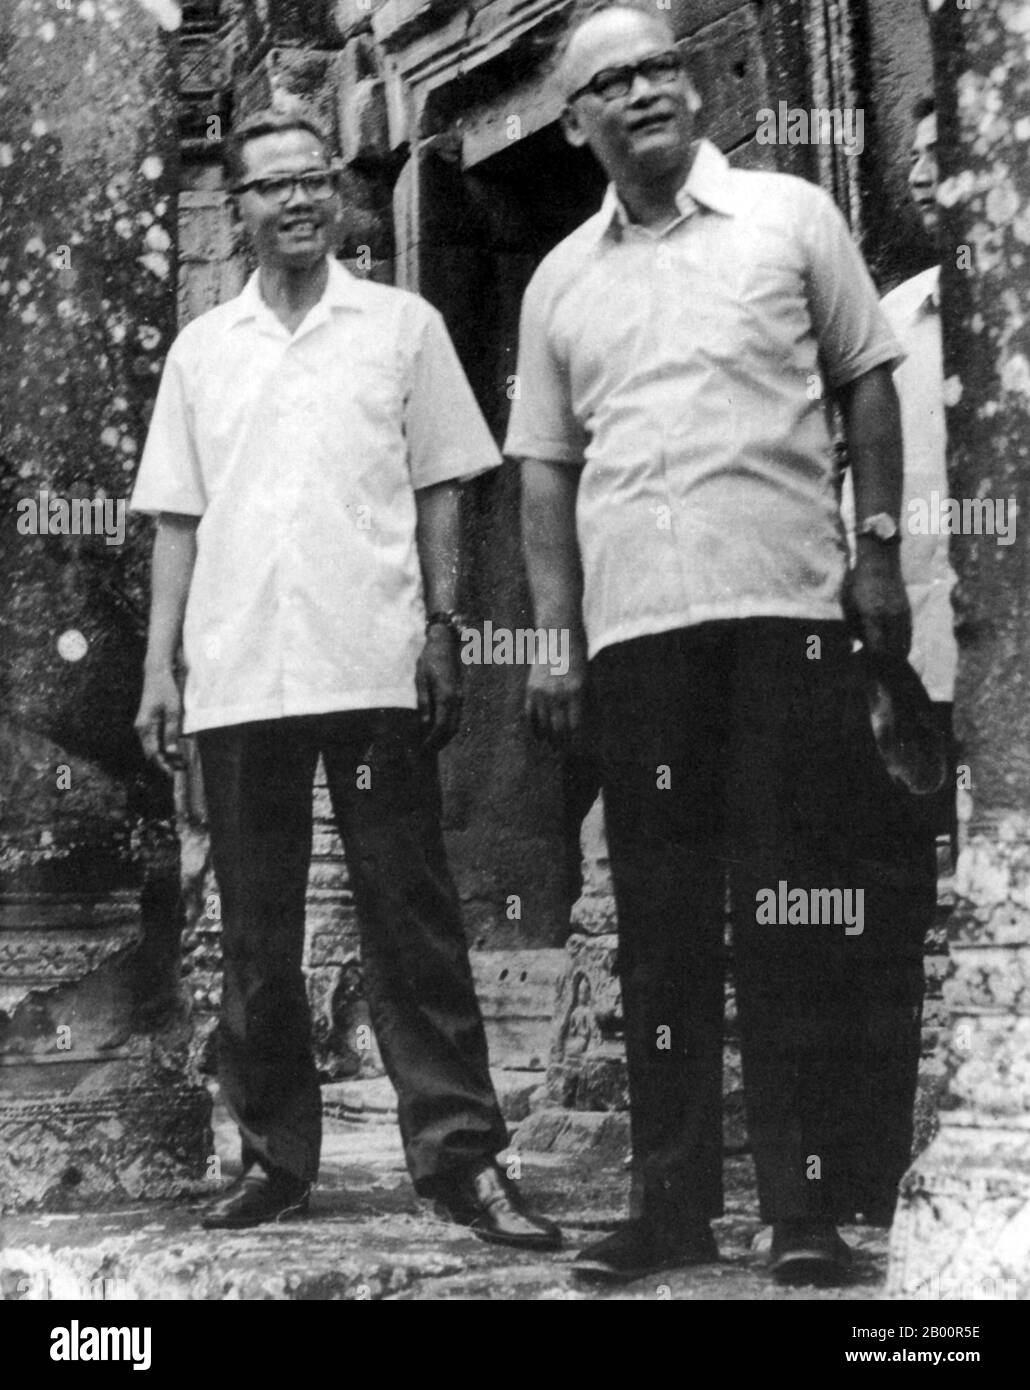 Kambodscha: Son Sen (1930–1997), Verteidigungsminister des Demokratischen Kampuchea, mit nicht identifizierten ausländischen Besuchern in Angkor, ca. 1976-77. Son Sen (12. Juni 1930 – 10. Juni 1997), Mitglied des Zentralkomitees der Kommunistischen Partei Kampuchea, auch bekannt als Khmer Rouge, von 1974 bis 1992 beaufsichtigte Sen den Sicherheitsapparat der Partei, einschließlich der Santebal-Geheimpolizei und des berüchtigten Sicherheitsgefängnisses S-21 in Tuol Sleng. Zusammen mit dem Rest seiner Familie wurde er auf Befehl von Pol Pot während einer Spaltung der Khmer Rouge 1997 in Anlong Veng getötet. Stockfoto